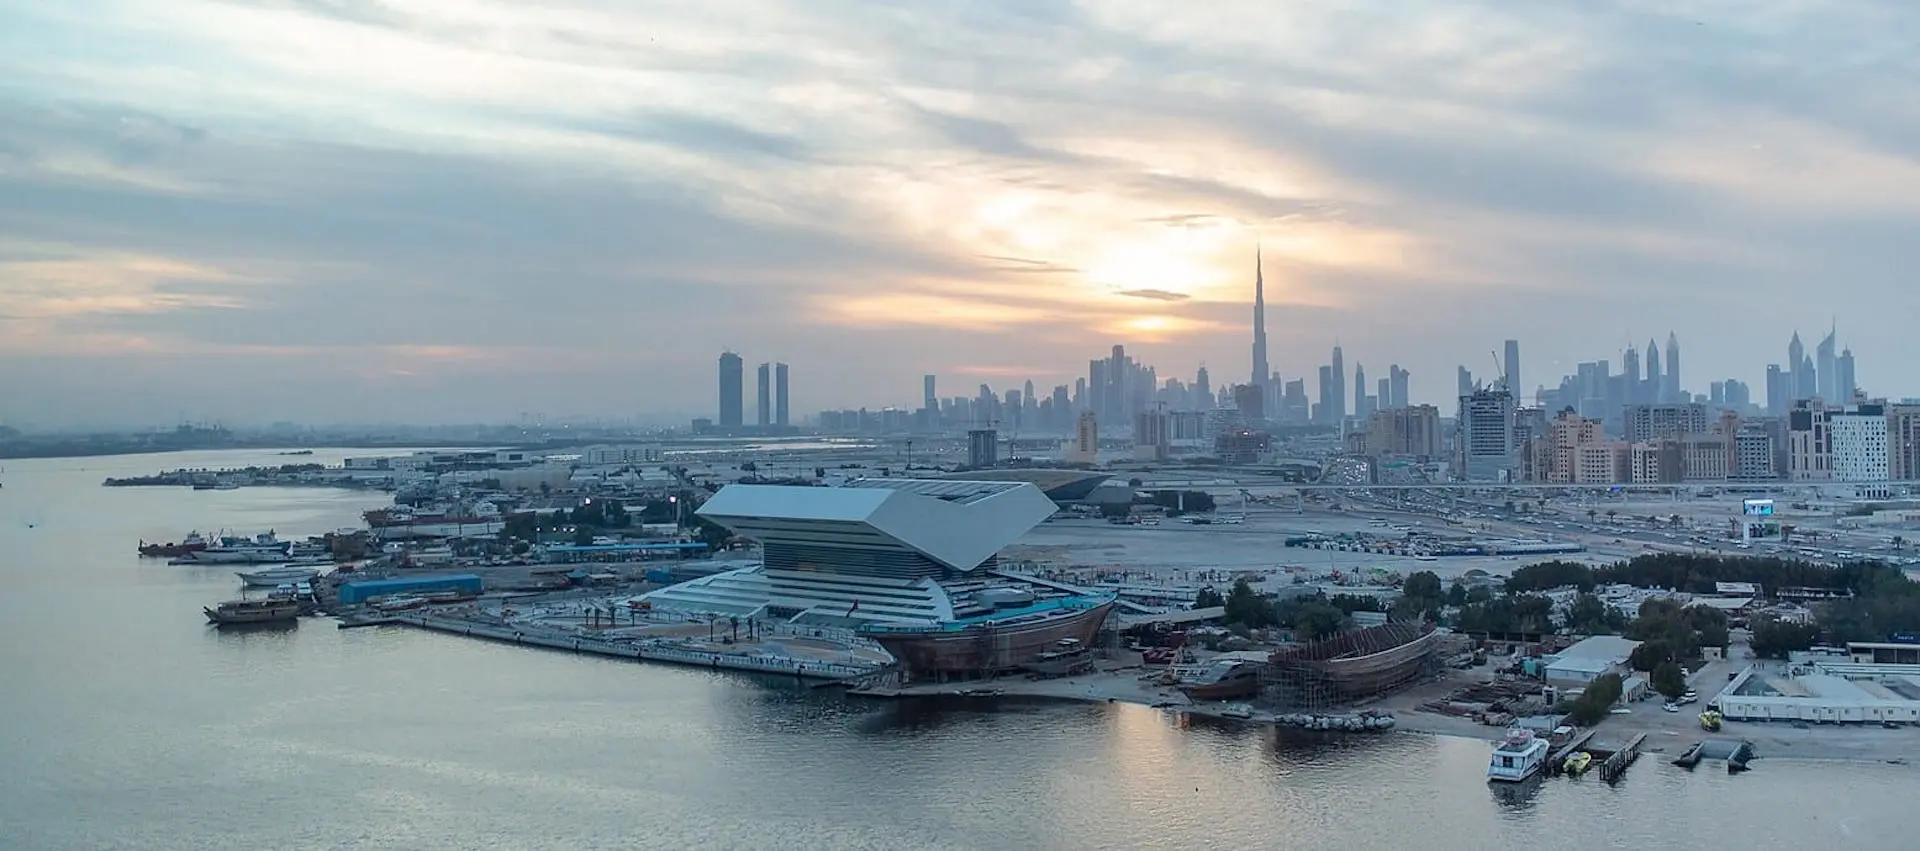 Así es Mohamed Bin Rashid en Dubái, una de las bibliotecas más grandes del mundo